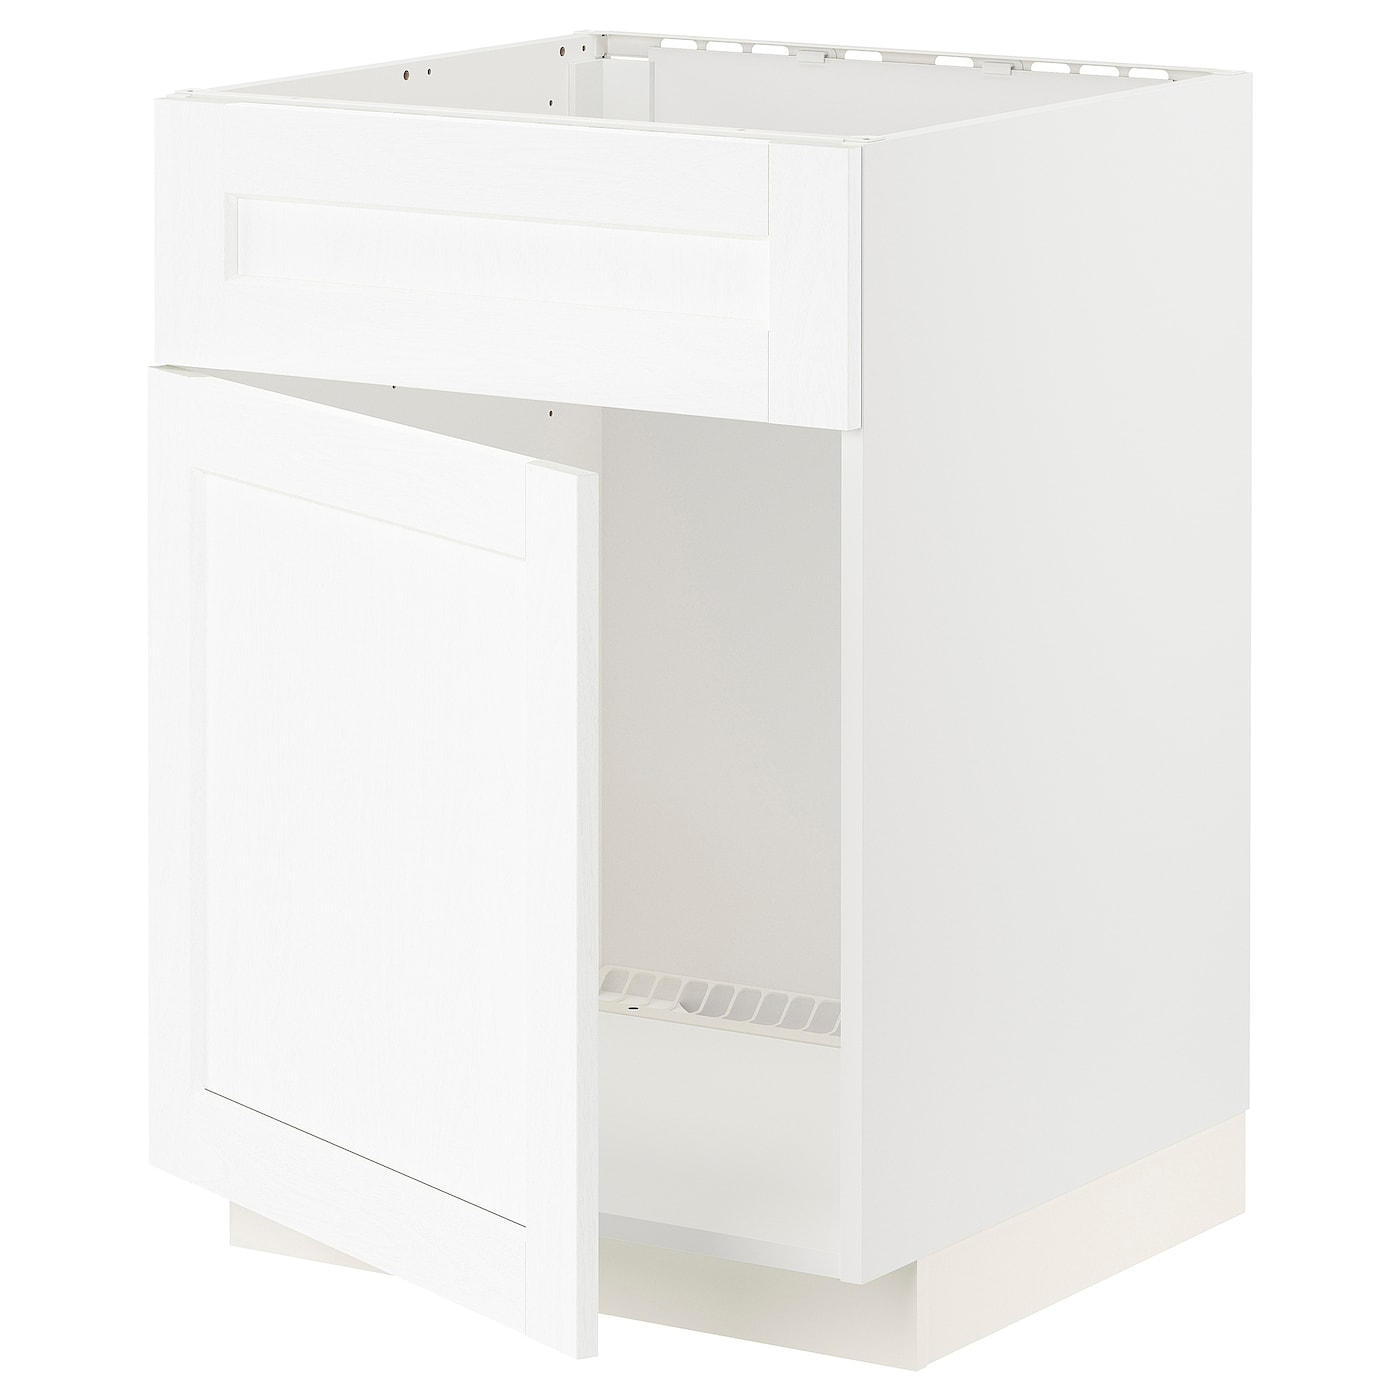 Напольный кухонный шкаф  - IKEA METOD, 88x62x60см, белый, МЕТОД ИКЕА